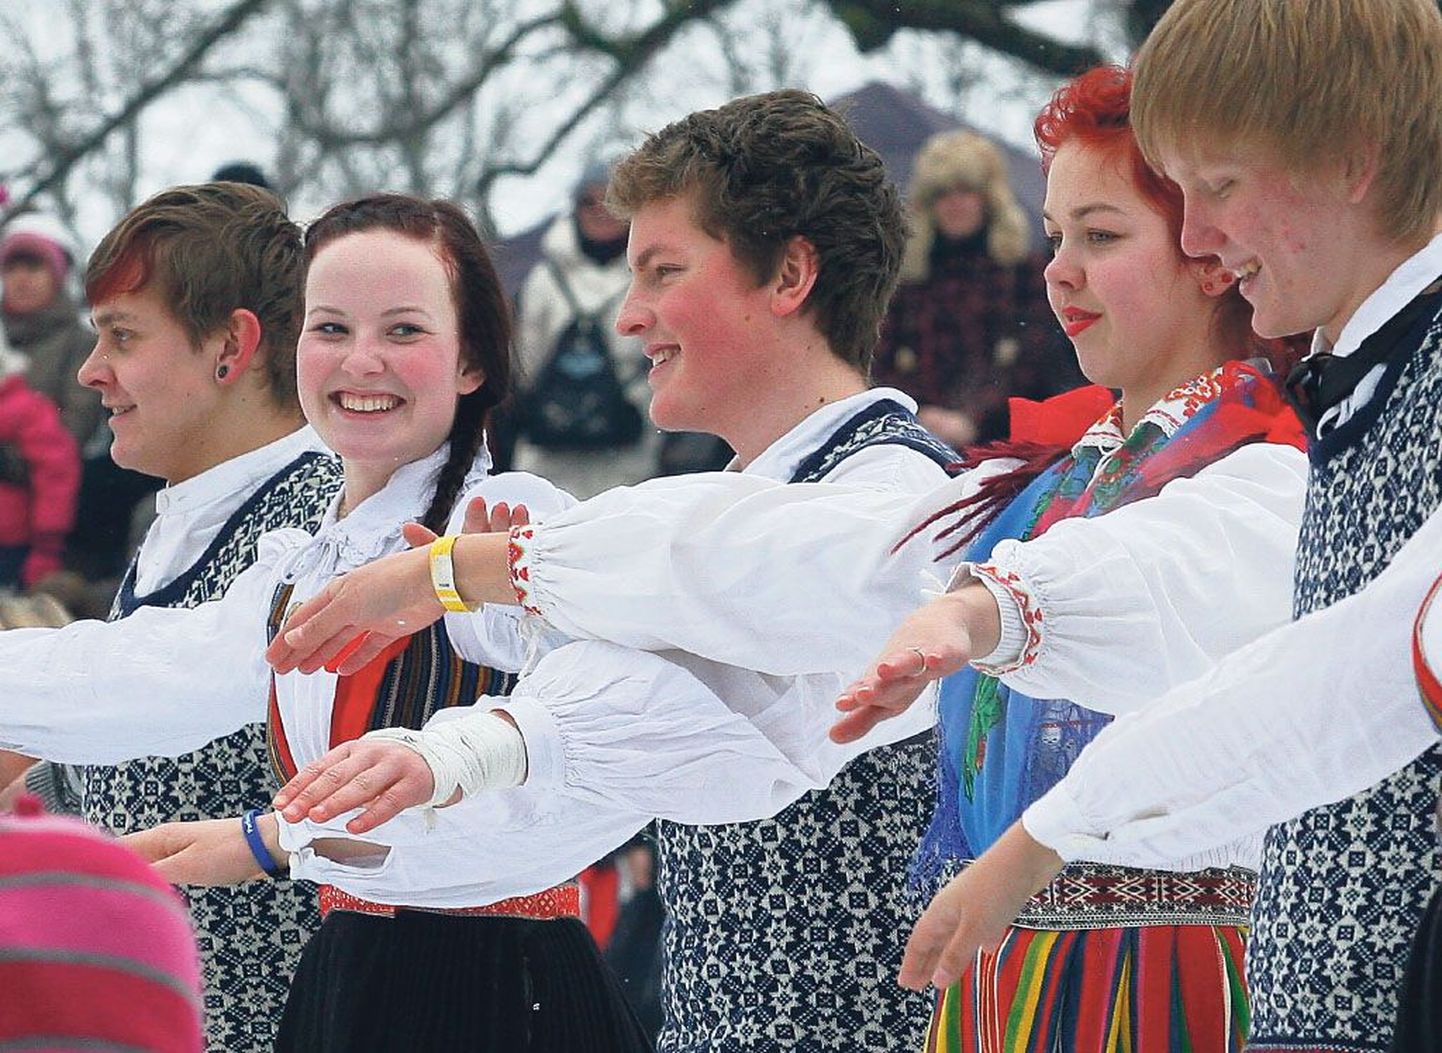 Eesti rahvas on ennegi külmal ajal isamaa auks koos laulnud. Pildil on jäädvustus Eesti Vabariigi aastapäeva tähistanud „Eesti peost“.